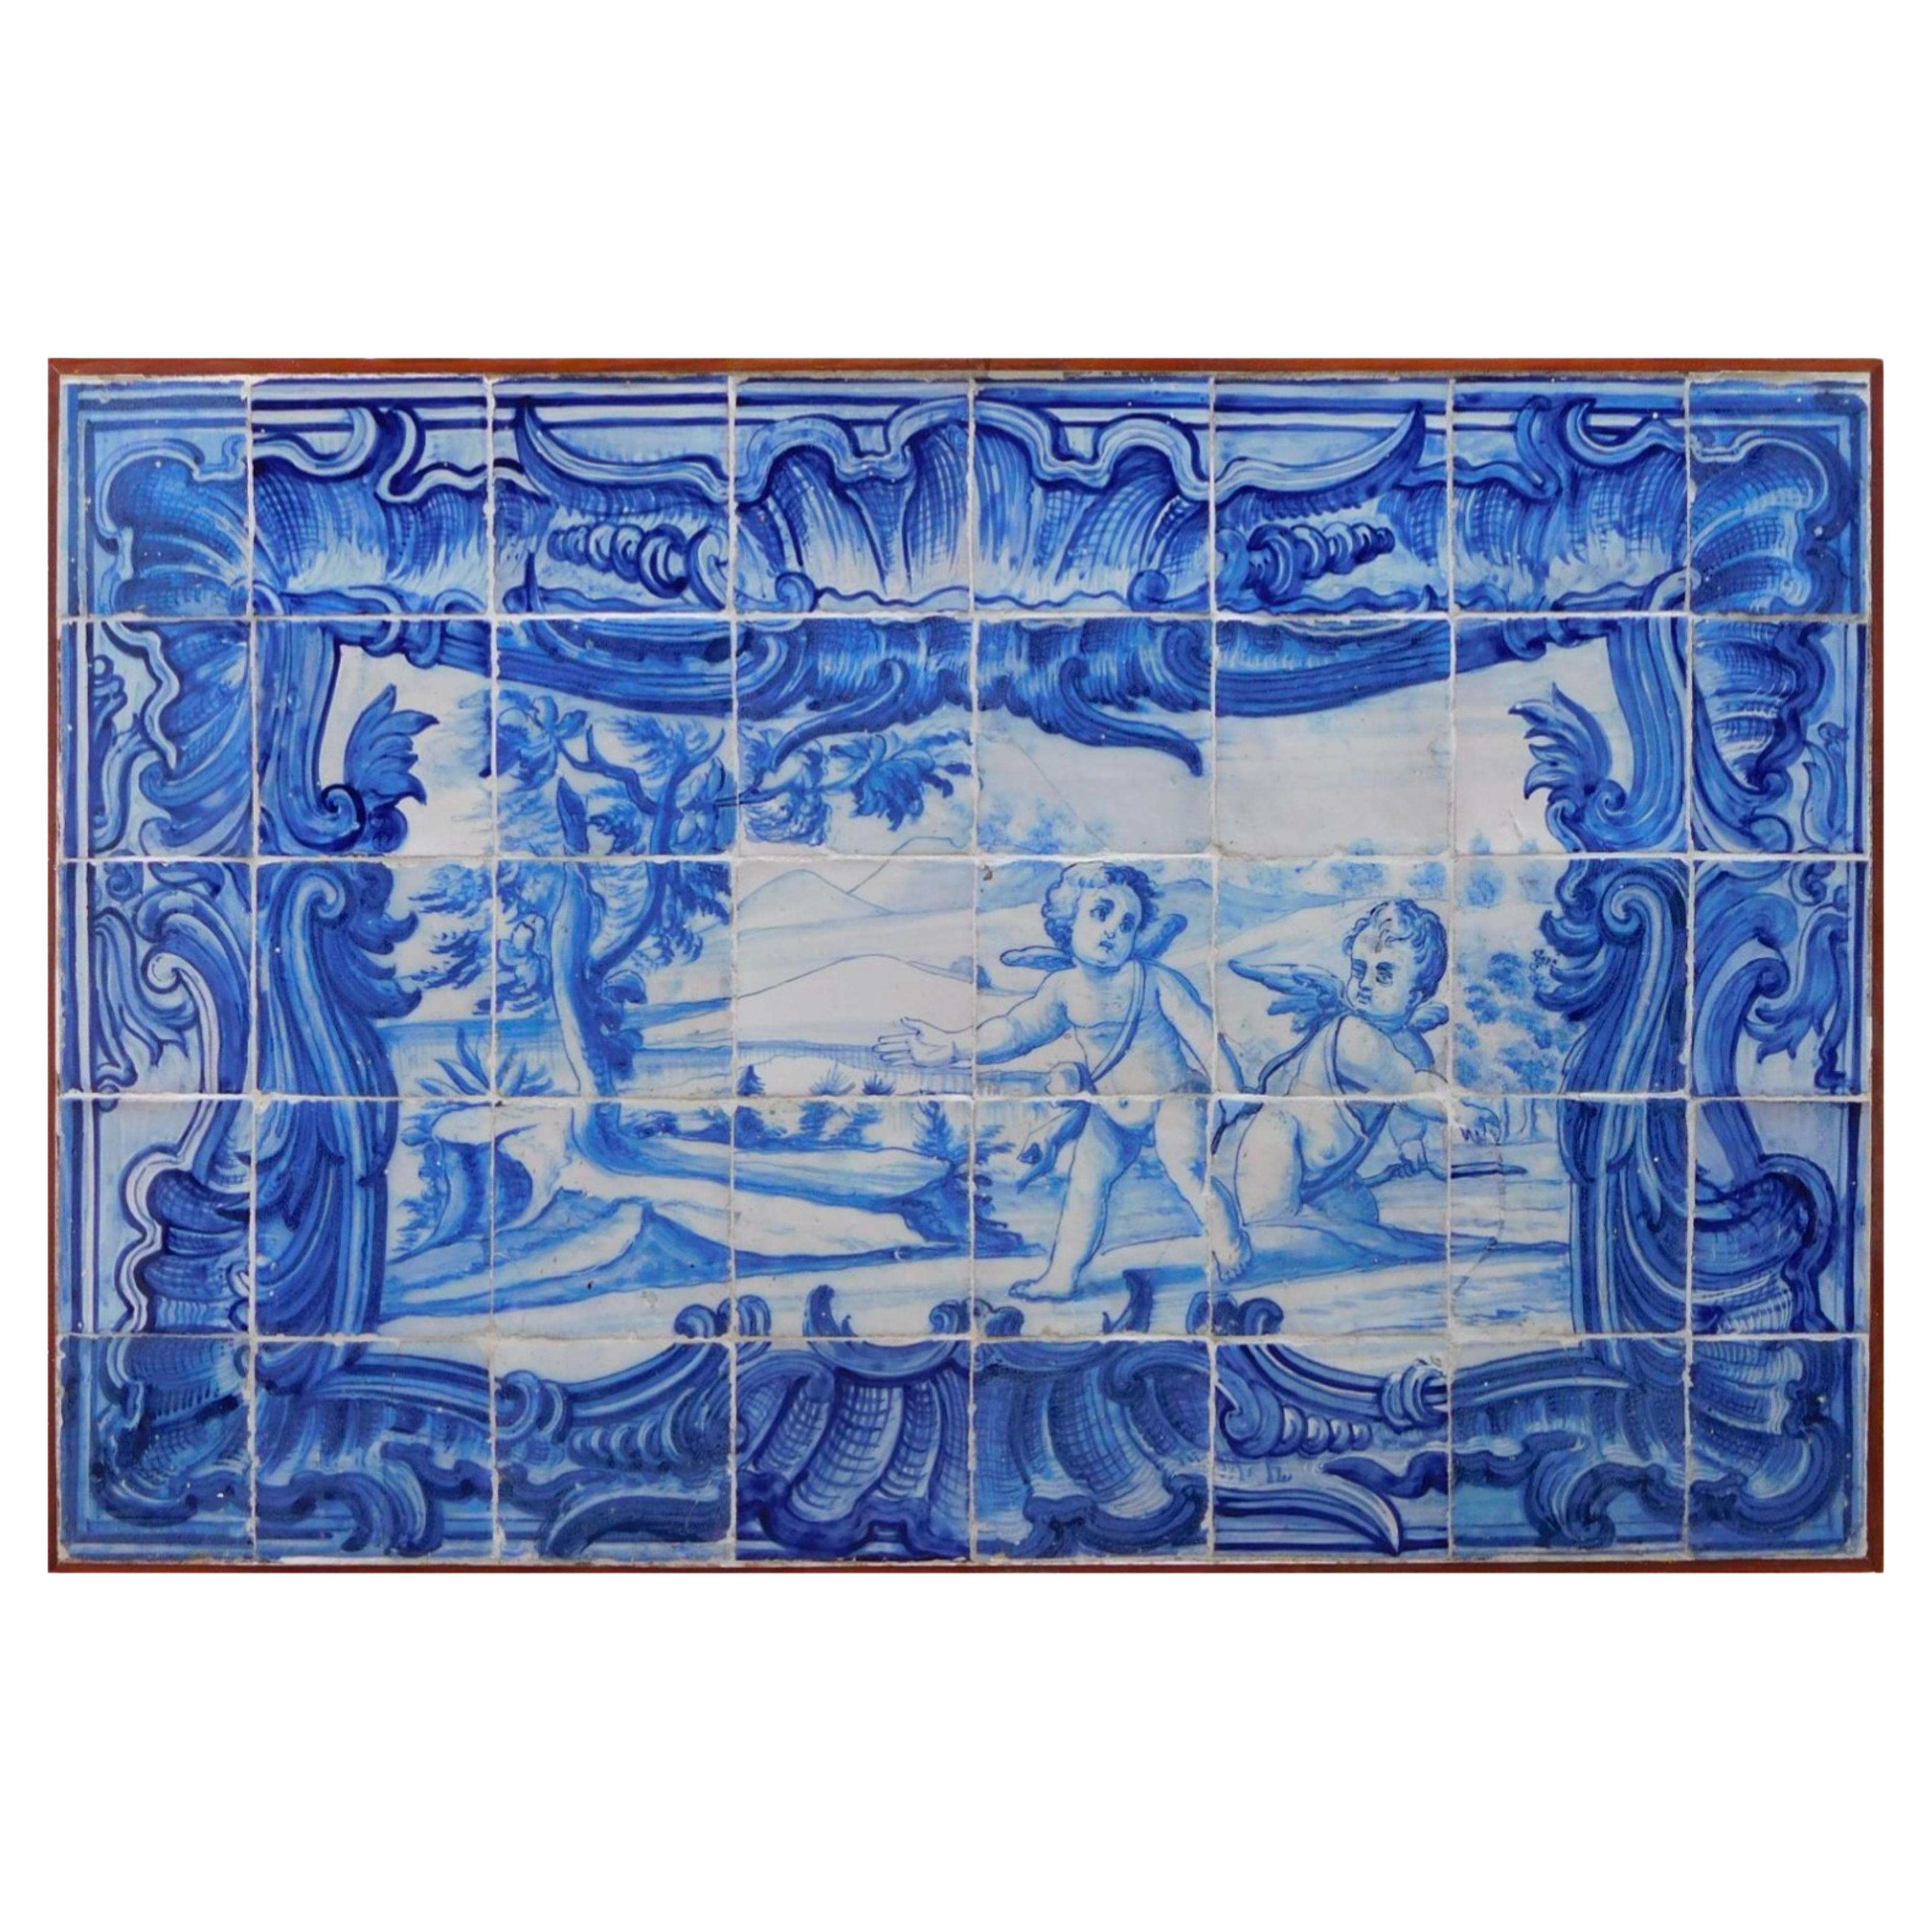 Panneau de carreaux portugais du 18e siècle « Anges jouant » 